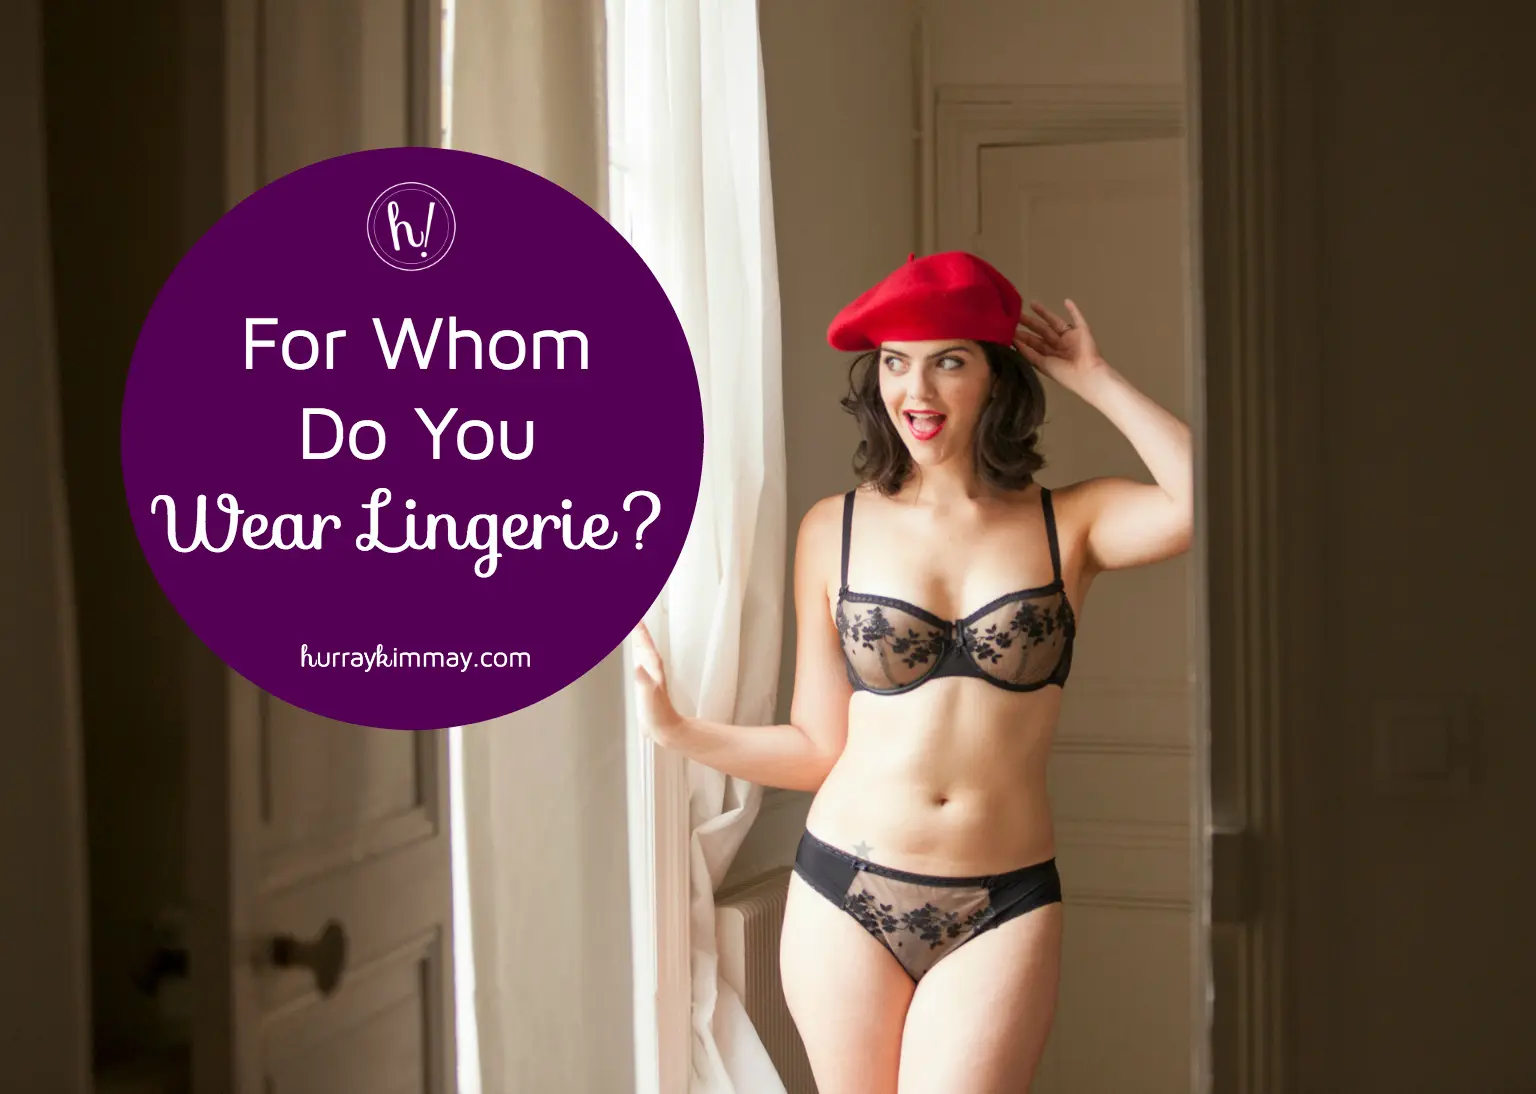 Women's Lingerie, Women's Underwear & Lingerie Outfits